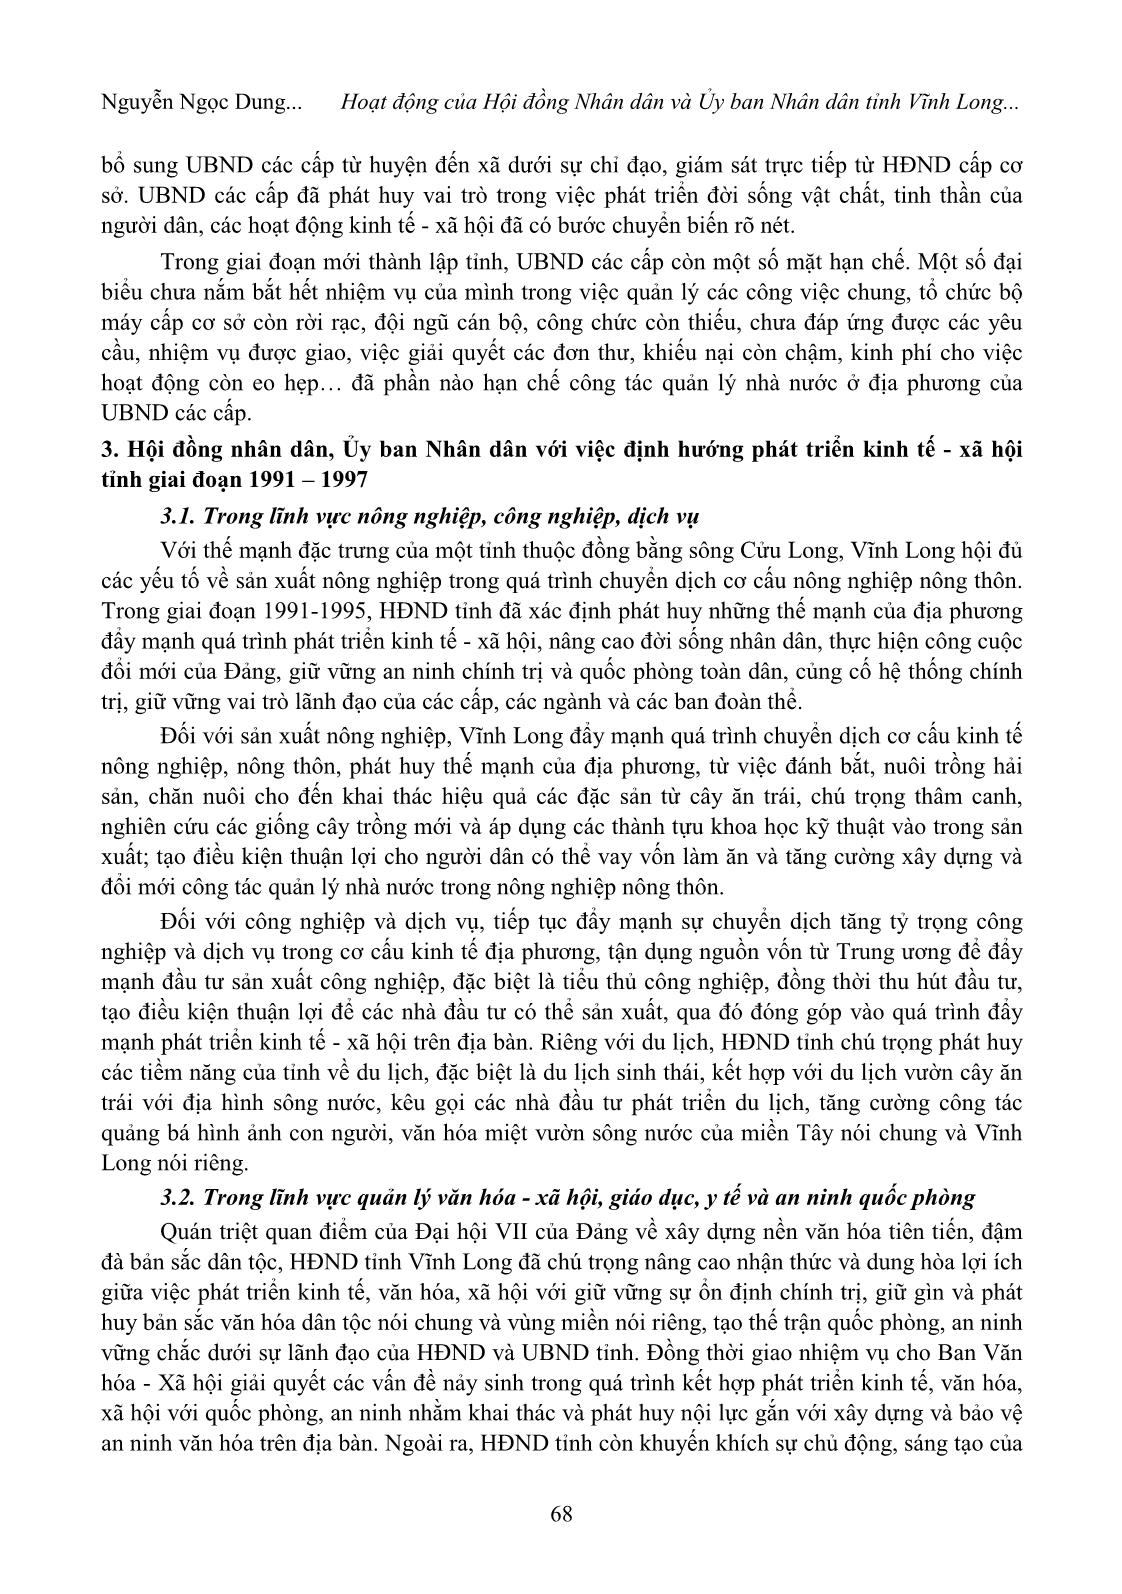 Hoạt động của hội đồng nhân dân và ủy ban nhân dân tỉnh Vĩnh Long những năm đầu tái lập tỉnh (1991 - 1997) trang 4